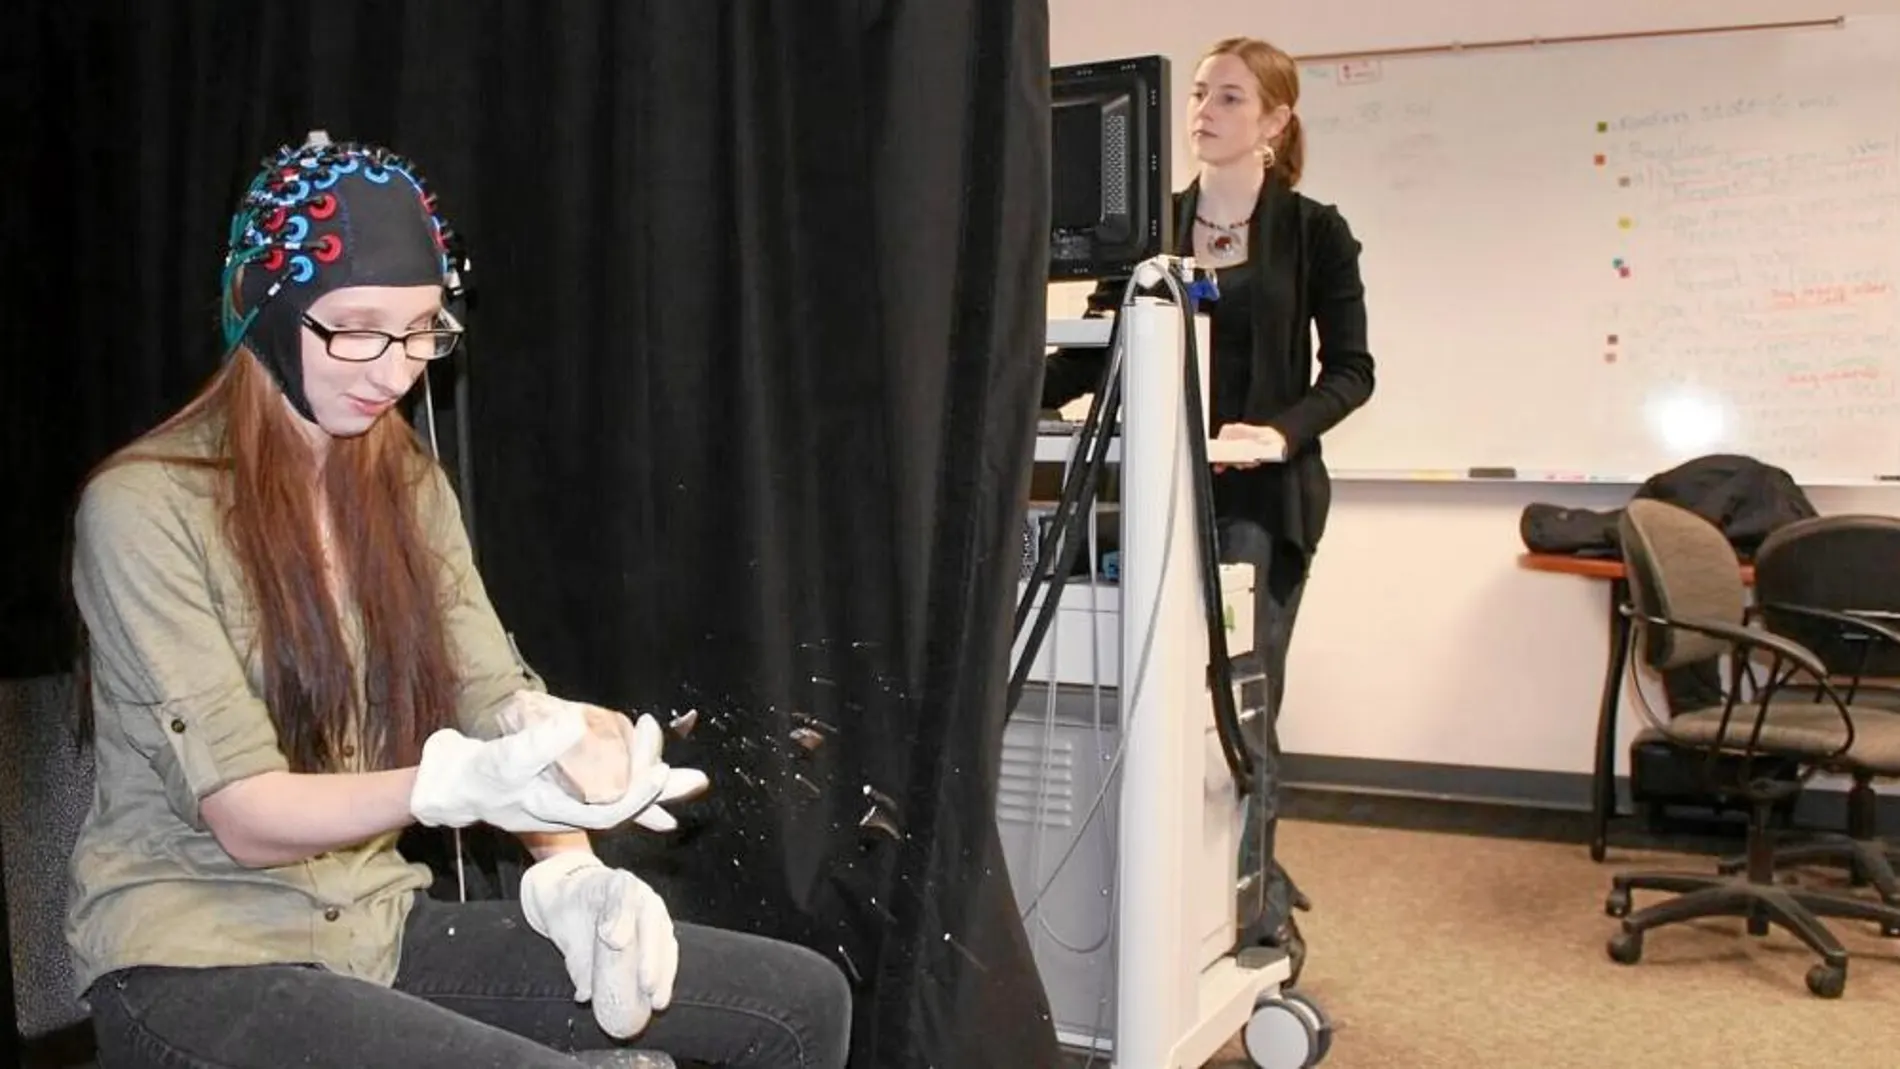 Mientras los voluntarios aprendían a realizar herramientas se analizó su cerebro con tecnologías de diagnóstico por imagen